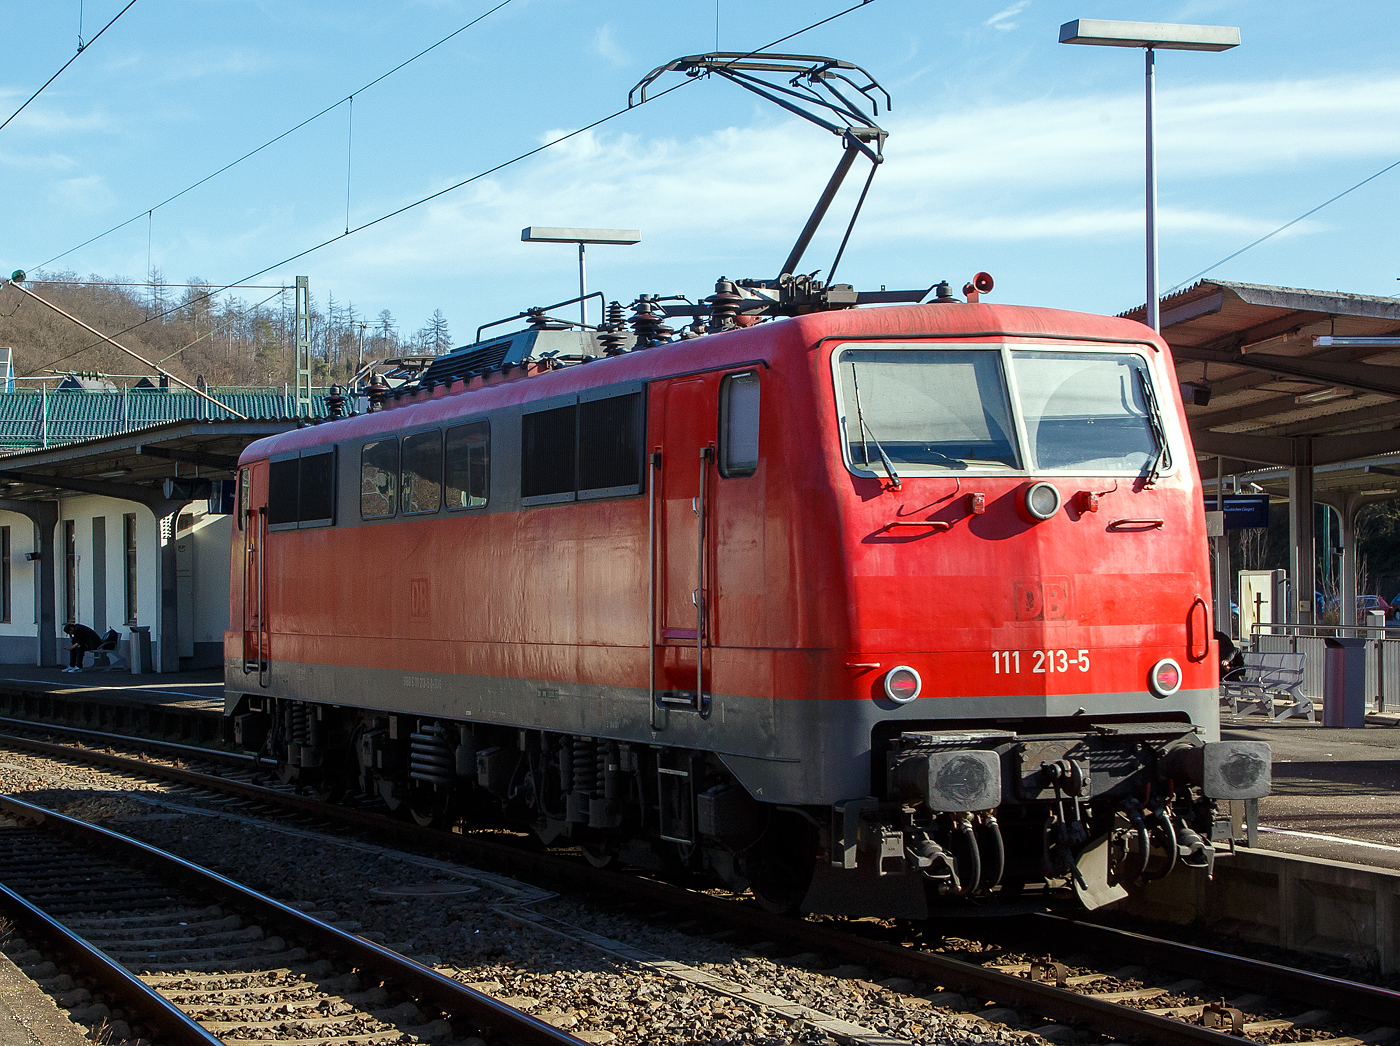 So ganz ohne Logo, wirkt eine Lok doch irgendwie „nackt“, zumal wie wenn sie einfarbig ist...
Die 111 213-5 (91 80 6111 213-5 D-ZUG) der smart rail GmbH (München) fährt am 02.03.2023 auf Tfzf (Triebfahrzeugfahrt) durch den Bahnhof Betzdorf (Sieg) in Richtung Siegen.

Die Lok wurde 1984 von der Krauss-Maffei AG in München-Allach unter der Fabriknummer 19920 gebaut und als 111 213-5 an die Deutsche Bundesbahn geliefert. Bis 2021 war sie im Bestand der DB Regio AG. Ich gehe mal davon aus, man wird die Lok wohl bald in einer neuen Farbvariante sehen.

Die Baureihe 111 ist die Nachfolgerin der Schnellzuglok-Baureihe 110. Weil nach Ende der 110er-Produktion noch immer Bedarf an weiteren schnellfahrenden E-Loks bestand, wurde Anfang der 1970er Jahre von der damaligen Deutschen Bundesbahn entschieden, auf Basis bewährter Teile der Baureihe 110 die Nachfolgereihe 111 zu entwickeln.

Besonderes Augenmerk legte man dabei auf die Verbesserung der Laufruhe bei hohen Geschwindigkeiten durch neue Drehgestelle und verbesserte Arbeitsbedingungen für den Lokführer. Hierzu wurde vom Bundesbahn-Zentralamt in München und dem Hersteller Krauss-Maffei der DB-Einheitsführerstand entwickelt, der nach neuesten ergonomischen Erkenntnissen gestaltet wurde und bis heute bei den meisten Neubau-Lokomotiven und Steuerwagen zum Einsatz kommt.


Die Konstruktion der Baureihe 111 lehnt sich im wesentlich an die der Baureihe 110 an, wurde jedoch in Teilen entscheidend verbessert bzw. erweitert. Im mechanischen Teil ist dabei insbesondere auf die neuartigen Drehgestelle zu verweisen; die Radsätze werden hierin über Lemniskatenlenker geführt. Für die Abstützung des Lokkastens kommen Flexicoilfedern zum Einsatz. Im elektrischen Teil der Baureihe 111 wurden die Fahrmotoren WB 372 der Baureihen 110 und 140 und deren Transformator weiterverwendet. Nachdem die Antriebskräfte ursprünglich über einen Gummiring-Kardanantrieb ähnlich dem der Baureihe 103 übertragen werden sollten, blieb man nach Versuchen mit der dazu umgebauten 110 466 beim bewährten Gummiringfederantrieb der Baureihe 110, da der Antrieb der Baureihe 103 erst jenseits von 160 km/h wesentliche Vorteile hatte. Auf dem Dach waren die neuen Einholm-Stromabnehmer Bauart SBS 65 vorgesehen, welche jedoch bei den Maschinen der ersten bis dritten Serie (111 001–146) nur zum Teil verwendet wurden und kurz darauf wieder abgebaut und gegen Scherenstromabnehmer der Bauart DBS 54 ausgetauscht wurden, da die Einholmstromabnehmer für die Baureihe 103 benötigt wurden. Deshalb fahren Loks der ersten Serien teilweise bis heute mit Scheren-Stromabnehmern DBS 54a. Ab 111 147 wurde dann ausnahmslos der SBS 65 verwendet, ab der fünften Bauserie (ab 111 179) dessen Weiterentwicklung SBS 81. Bei den vier Maschinen 111 103–105 und 109 wurde Anfang der 1980er Jahre mit dem WBL 79 ein neuer Stromabnehmer getestet, der entgegen aller bis dahin verwendeten Einholmstromabnehmer sein Gelenk zur Lokmitte hin gerichtet hatte.

Die Platzierung des Trafos aufrecht in der Mitte des Maschinenraums wurde beibehalten, die Aufteilung des Maschinenraums jedoch so modifiziert, dass es vor und hinter dem Transformator nur einen mittigen Maschinenraumgang gibt. Die Schaltung der Fahrmotoren erfolgt in bewährter Manier hochspannungsseitig mittels elektromotorisch betriebenen Schaltwerk in 28 Fahrstufen über Thyristor-Lastschalter. Die Motoren können als elektrische Bremse genutzt werden, sie arbeiten dann jeder auf einen eigenen Bremswiderstand. Bremsleistung und Bremskraft konnten im Vergleich zur Baureihe 110 gesteigert werden. Die entstehende Wärme wird über Dachlüfter abgeführt, welche nun vom Bremsstrom angetrieben werden. Geregelt wird die Bremse über einen Hallgenerator, wie er bereits bei der letzten 110er-Serie zum Einsatz kam. Neben der elektrischen Bremse sind auch eine mehrlösige Druckluftbremse, eine pneumatische, direkt wirkende Zusatzbremse sowie je Drehgestell eine Spindelhandbremse vorhanden. Bei Betriebsbremsungen werden über das Führerbremsventil die indirekte und über den gekuppelt mitgeführten Bremssteller die elektrische Bremse angesteuert, mit deren Wirksamkeit die indirekte Druckluftbremse der Lok deaktiviert wird. Lediglich bei Schnellbremsungen wirken sowohl Druckluft- wie auch die elektrische Bremse. Fällt die Elektrische Bremse aus, steht sofort in vollem Umfang die indirekte Druckluftbremse zur Verfügung. Gegenwärtig wird bei den 111ern ein elektronischer Gleitschutz nachgerüstet, welcher sowohl auf die Druckluft- wie auch die Elektrische Bremse wirkt, nachdem die 111 in den Herbstmonaten stets zur Flachstellenbildung neigte.


Von den Loks der Baureihe 111 wurden zwischen 1974 bis 1984 insgesamt 227 Stück von verschiedenen Herstellern (AEG, BBC, Henschel, Krauss-Maffei, Krupp, Siemens) gebaut, 222 Stück sind noch im Bestand der DB. 

Eingesetzt werden die 160 km/h schnellen Lokomotiven heute vorwiegend im Regional- und Nahverkehr, während bei der Indienststellung auch der leichte Personen-Fernverkehr zu ihrem Aufgabengebiet gehörte.

Technische Daten:
Spurweite: 1.435 mm
Achsformel: Bo'Bo'
Länge über Puffer: 16.750 mm
Höhe: 4.489 mm
Breite: 3.130 mm
Drehzapfenabstand: 7.900 mm
Achsabstand im Drehgestell:  3.400 mm
Dienstgewicht:  83,0 t
Stundenleistung: 4×925 kW = 3.700 kW
Dauerleistung:  4×905 kW = 3.620 kW
Dienstgewicht: 83 t 
Anfahrzugkraft: 274 kN
Dauerleistung  der elektrischen Bremse: 3.600 kW
Höchstgeschwindigkeit: 160 km/h